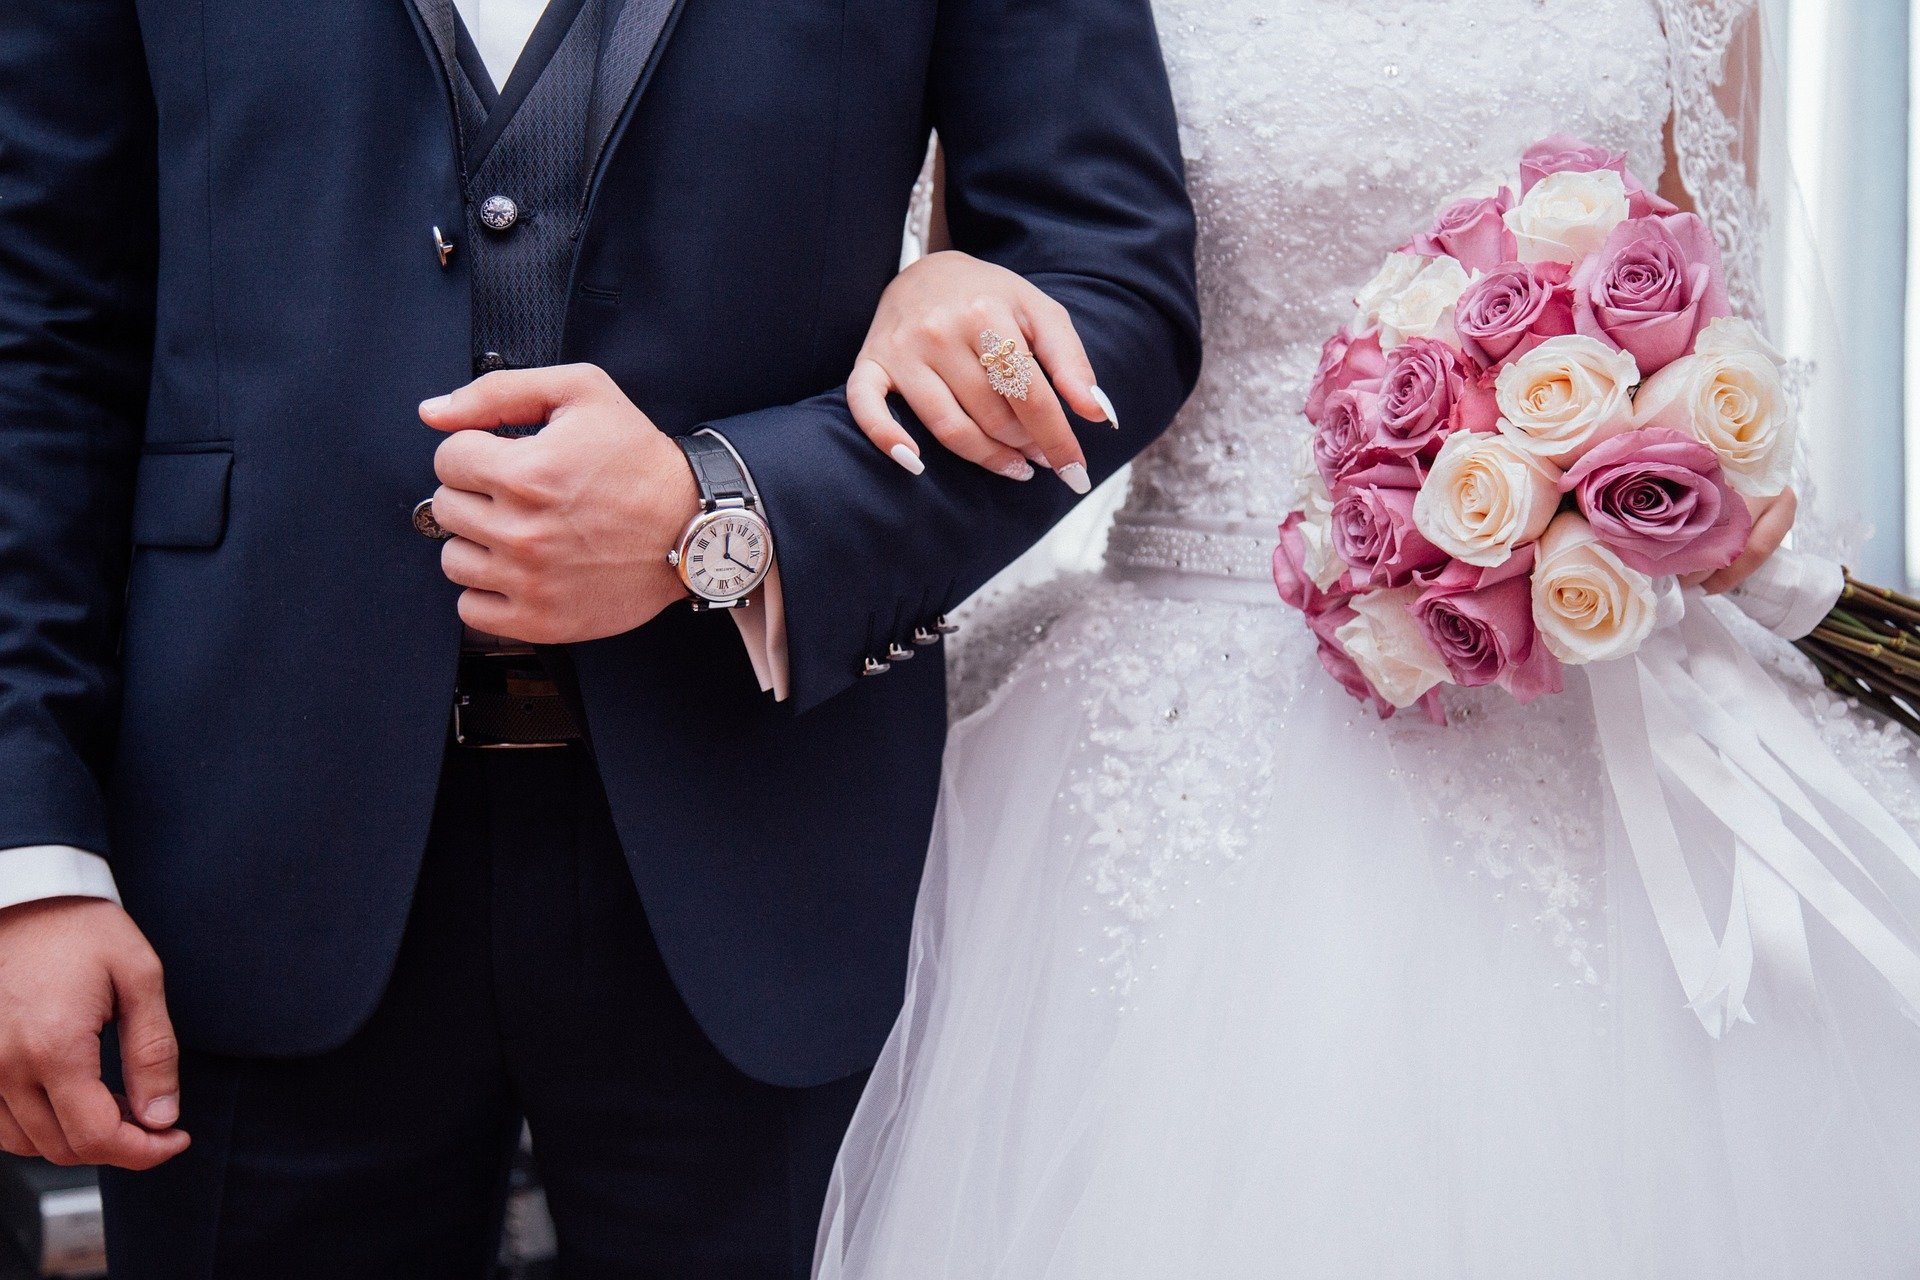 Gesundheitsministerium: Hochzeiten auch bei Inzidenzstufe 2 am kommenden Wochenende mit Schutzvorkehrungen möglich